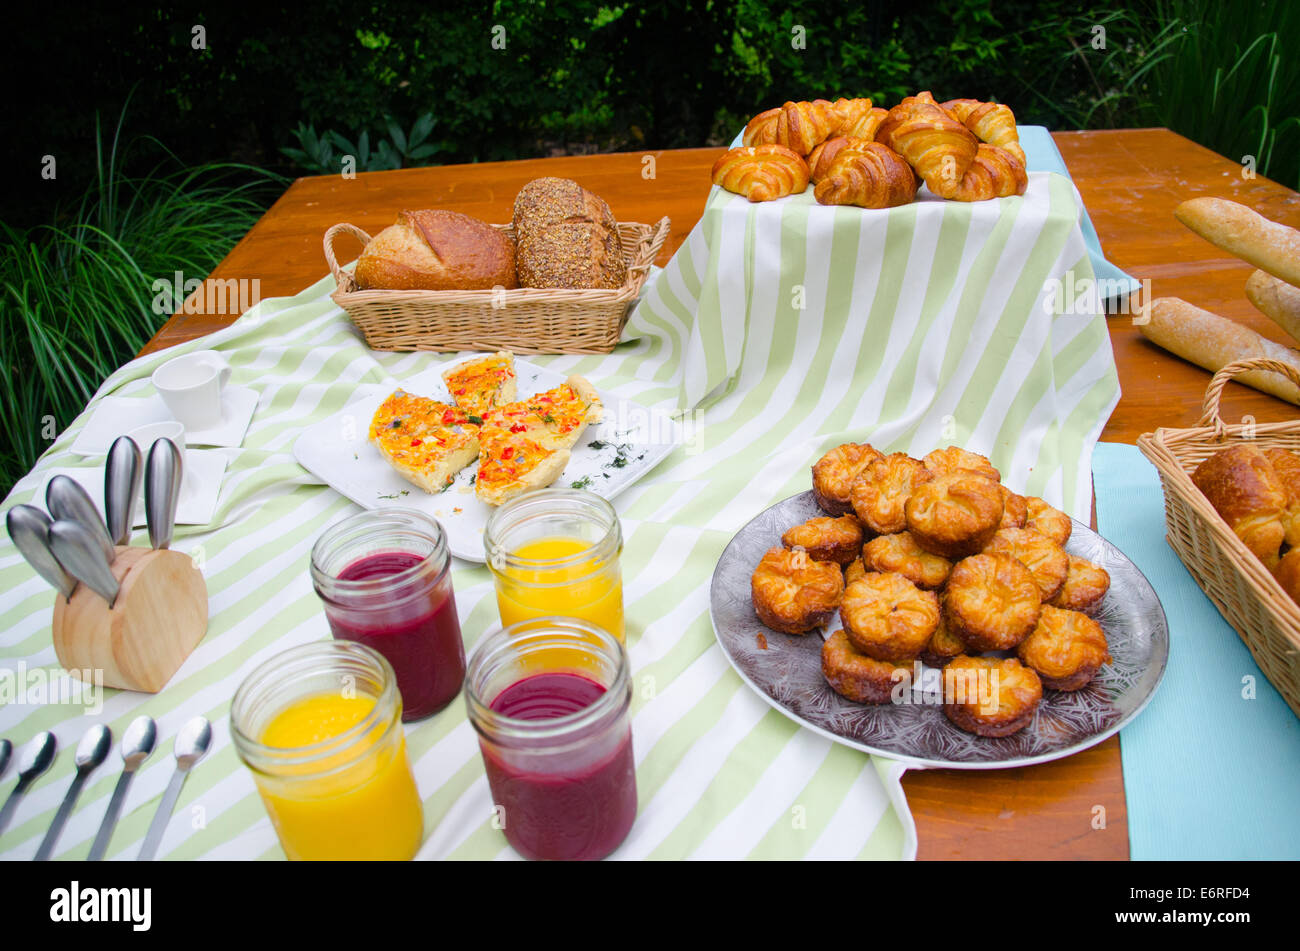 Picknick-Frühstück mit Saft, Gebäck, Croissants, Brotkorb, Tischdecken, Geschirr, Baguettes auf einem Tisch verteilen Stockfoto